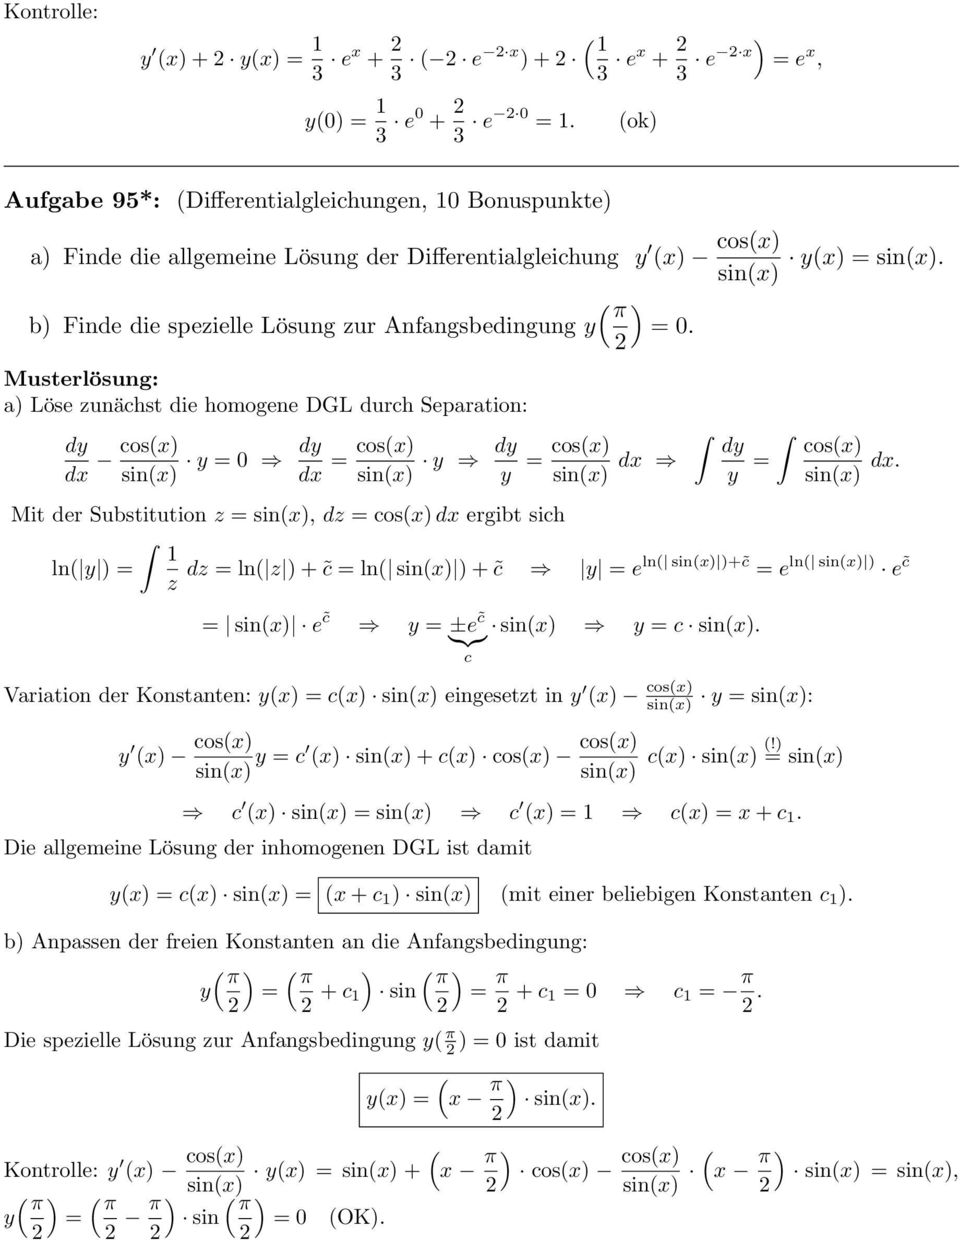 a Löse zunächst die homogene DGL durch Separation: dx cos(x sin(x 0 dx = cos(x sin(x y cos(x sin(x dx cos(x sin(x dx.